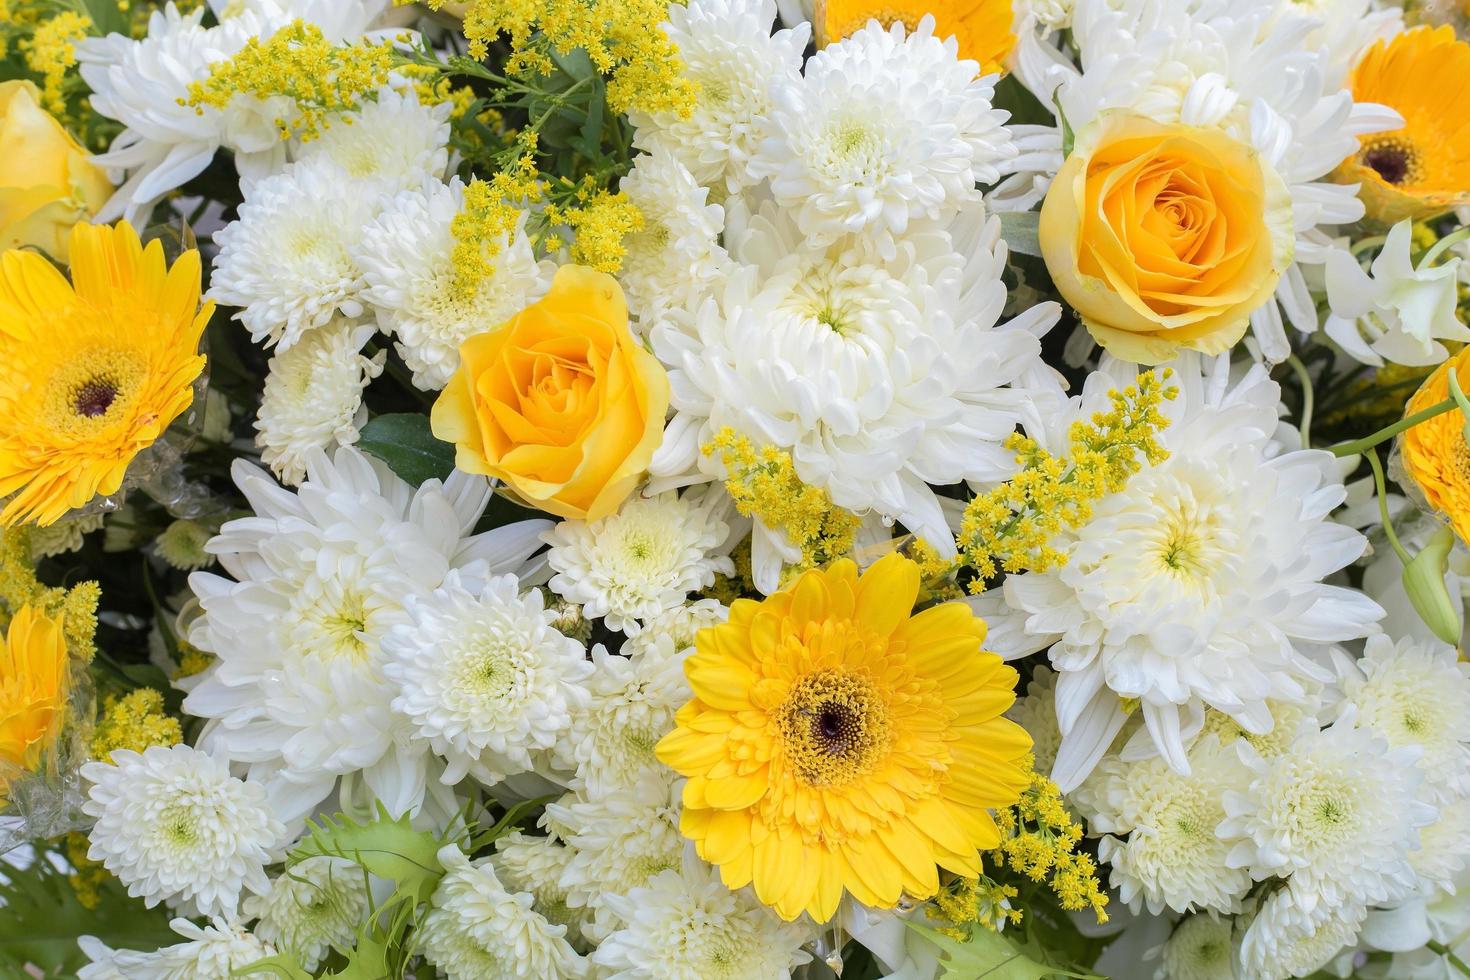 gelbe und weiße Chrysanthemenblüten, Rose wurde mit grünen Blättern als Kranz geschmückt, um sie bei der Beerdigung zu verwenden. foto